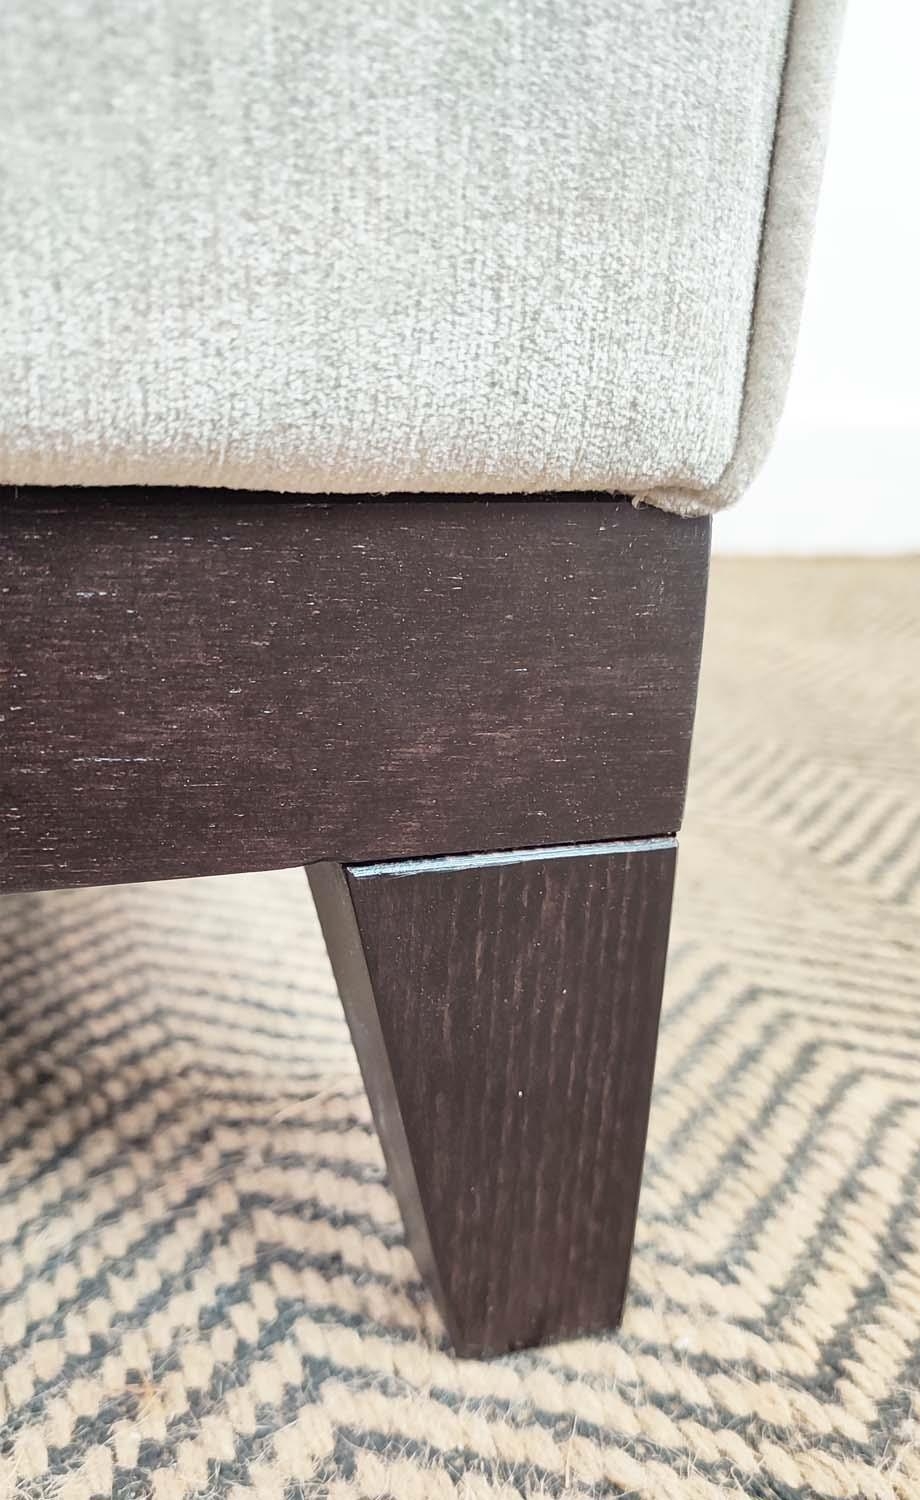 SOFA, grey fabric upholstered, ebonised supports, 160cm x 85cm x 75cm. - Image 6 of 7